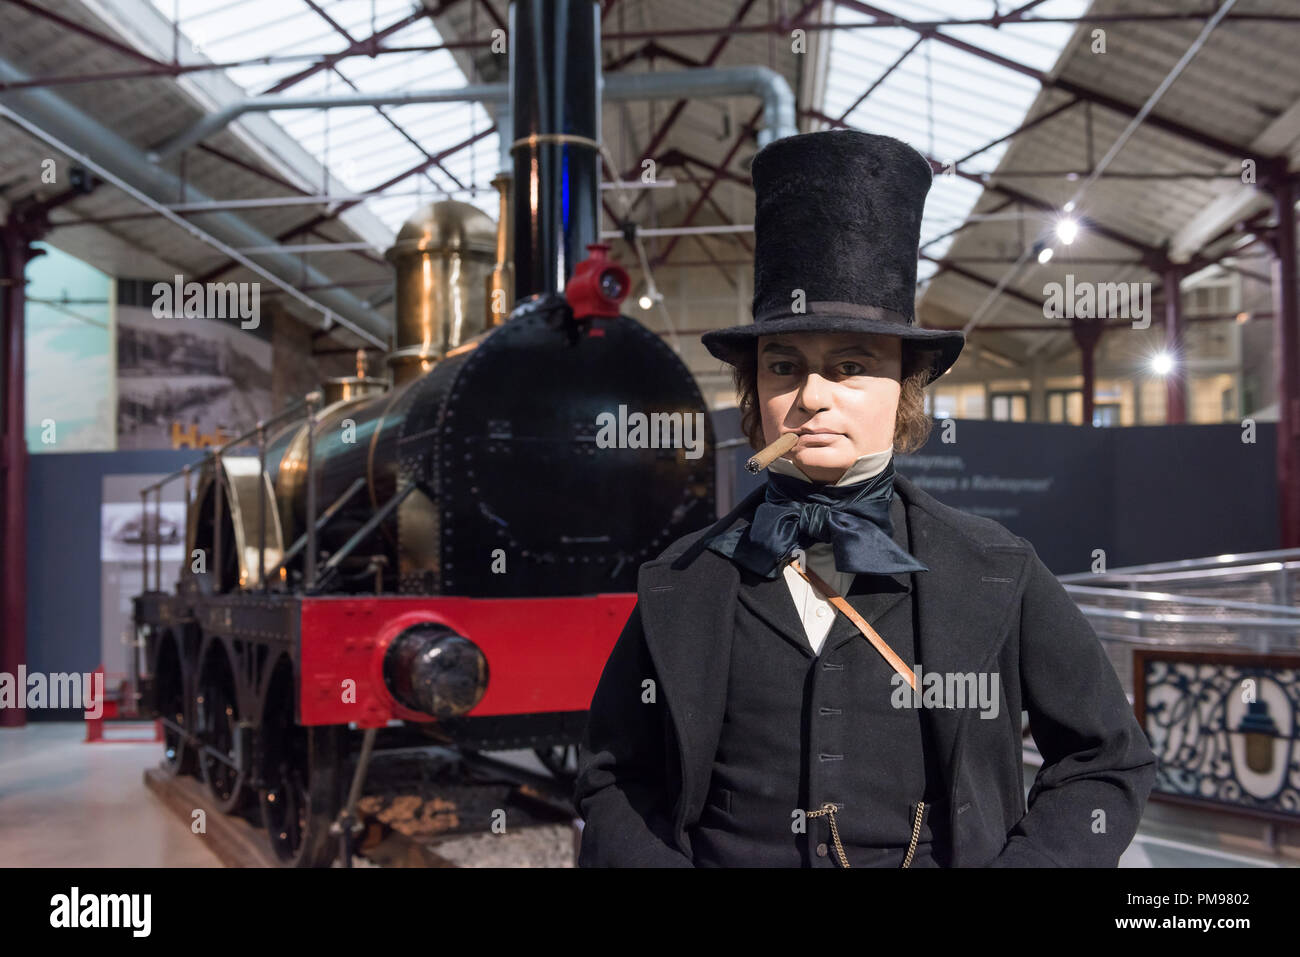 Brunel à vapeur, Great Western Railway Museum, Swindon, Royaume-Uni Banque D'Images